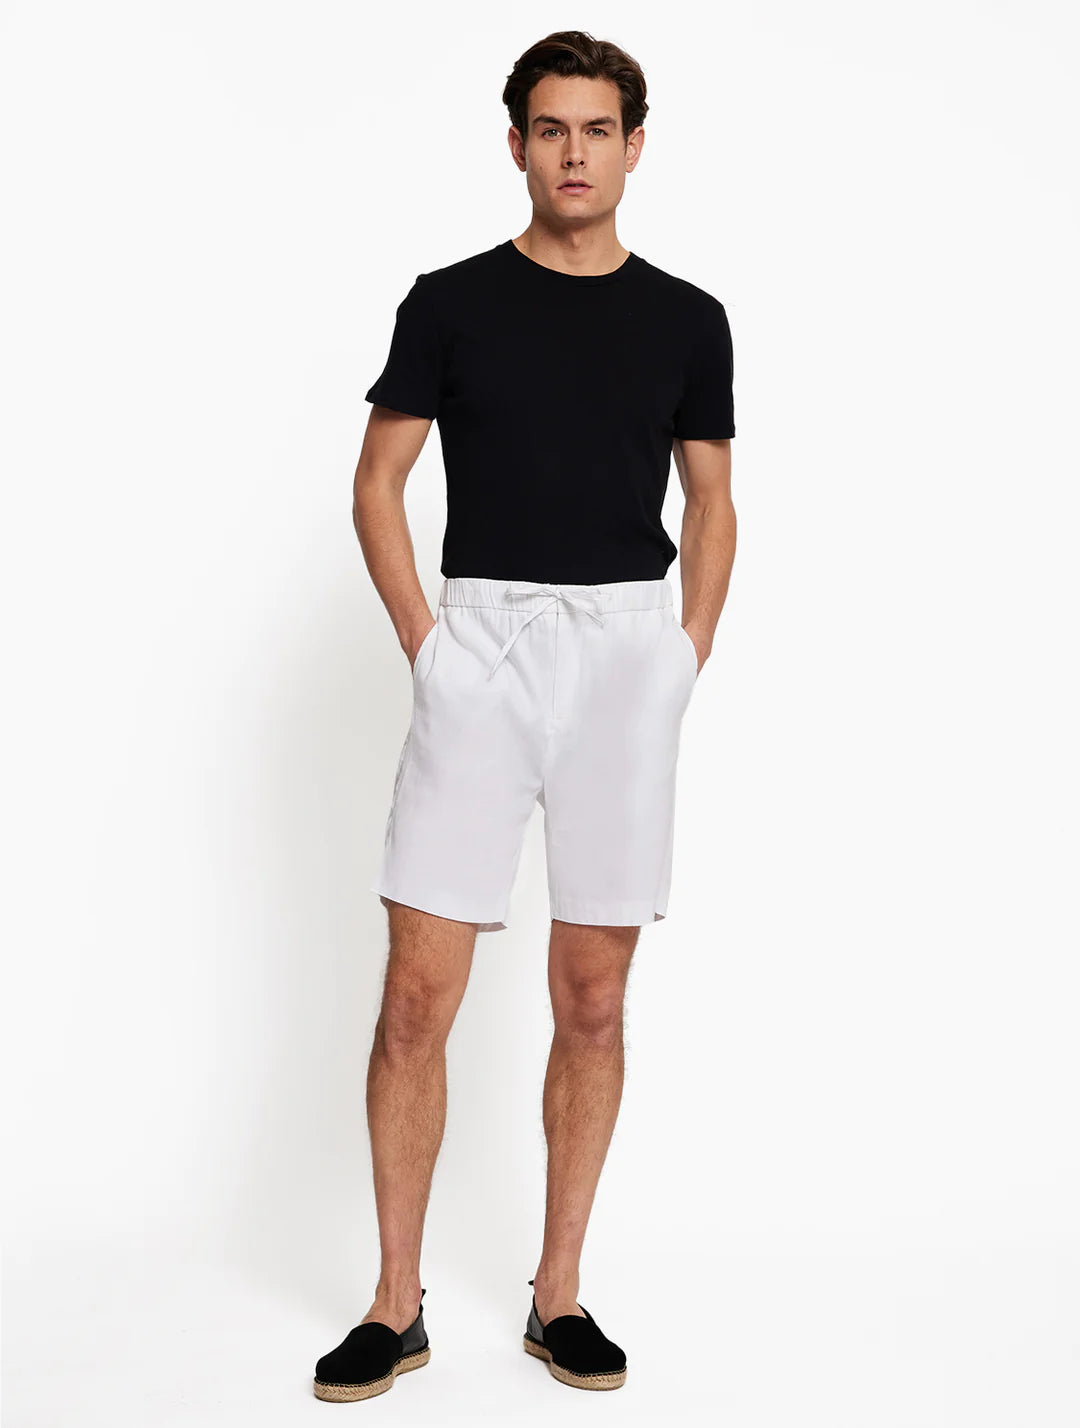 Felipe White Linen Shorts